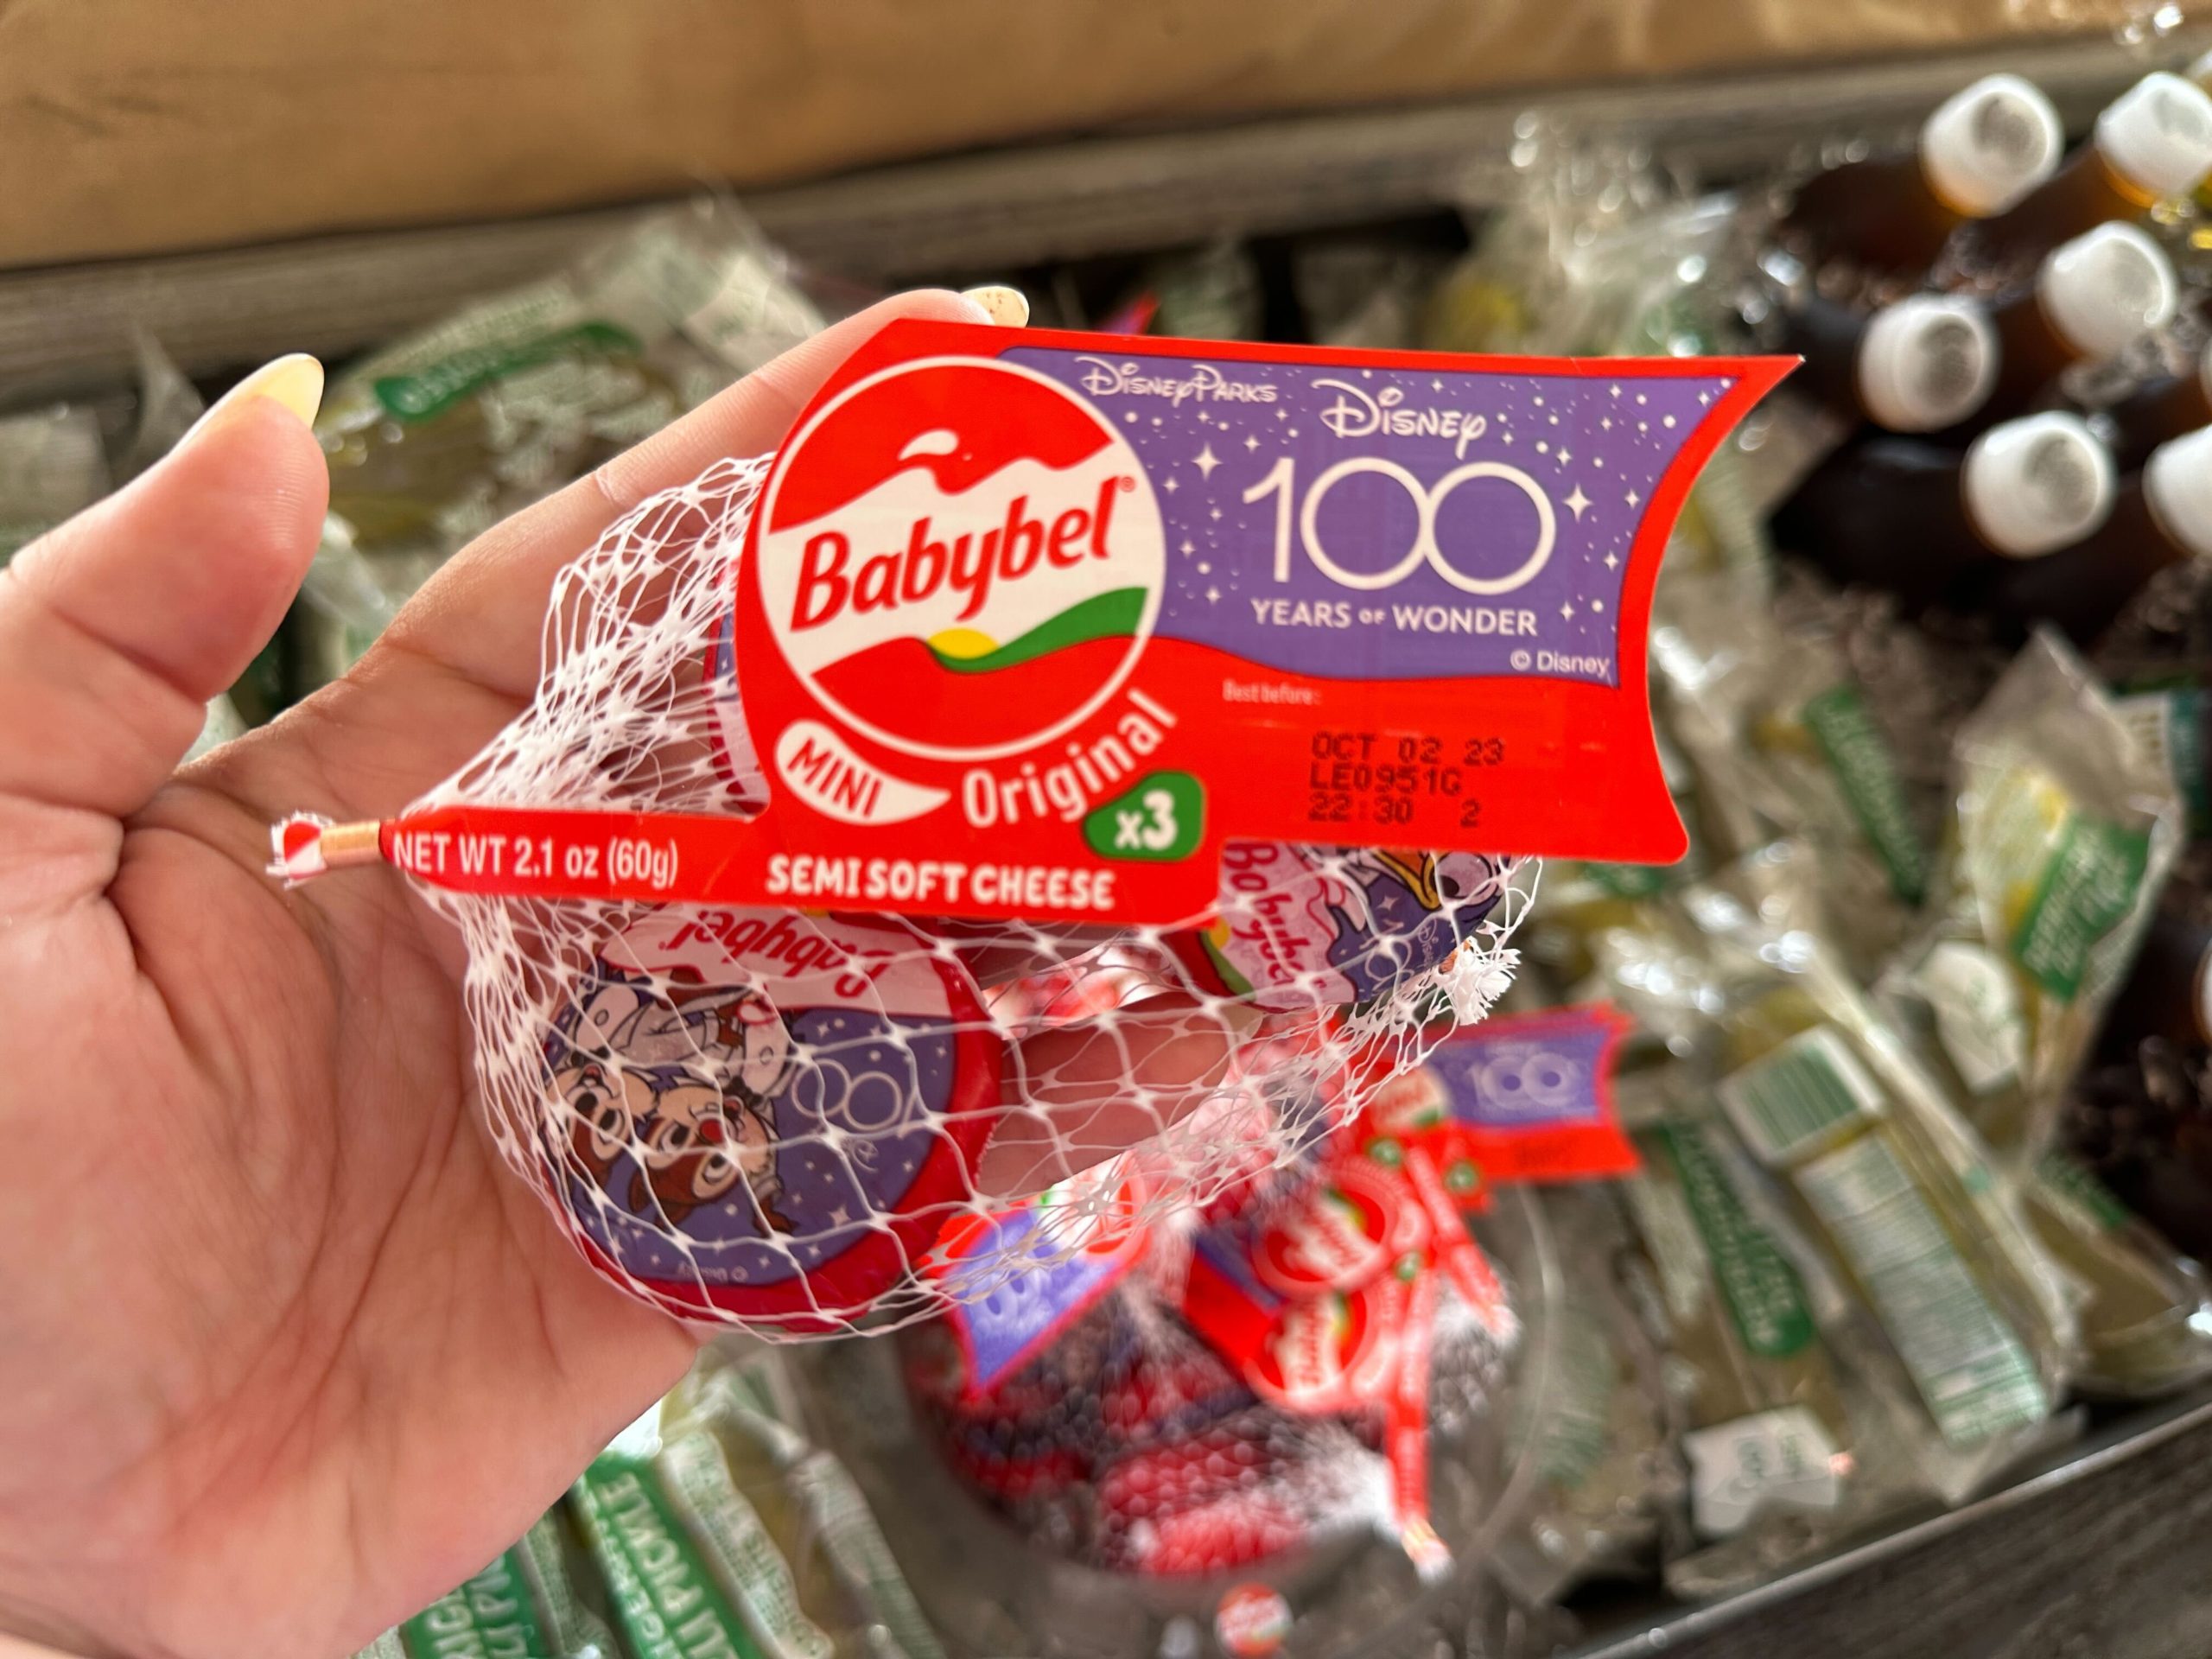 Babybel celebrates 100 years of Disney - Food & Beverage Industry News